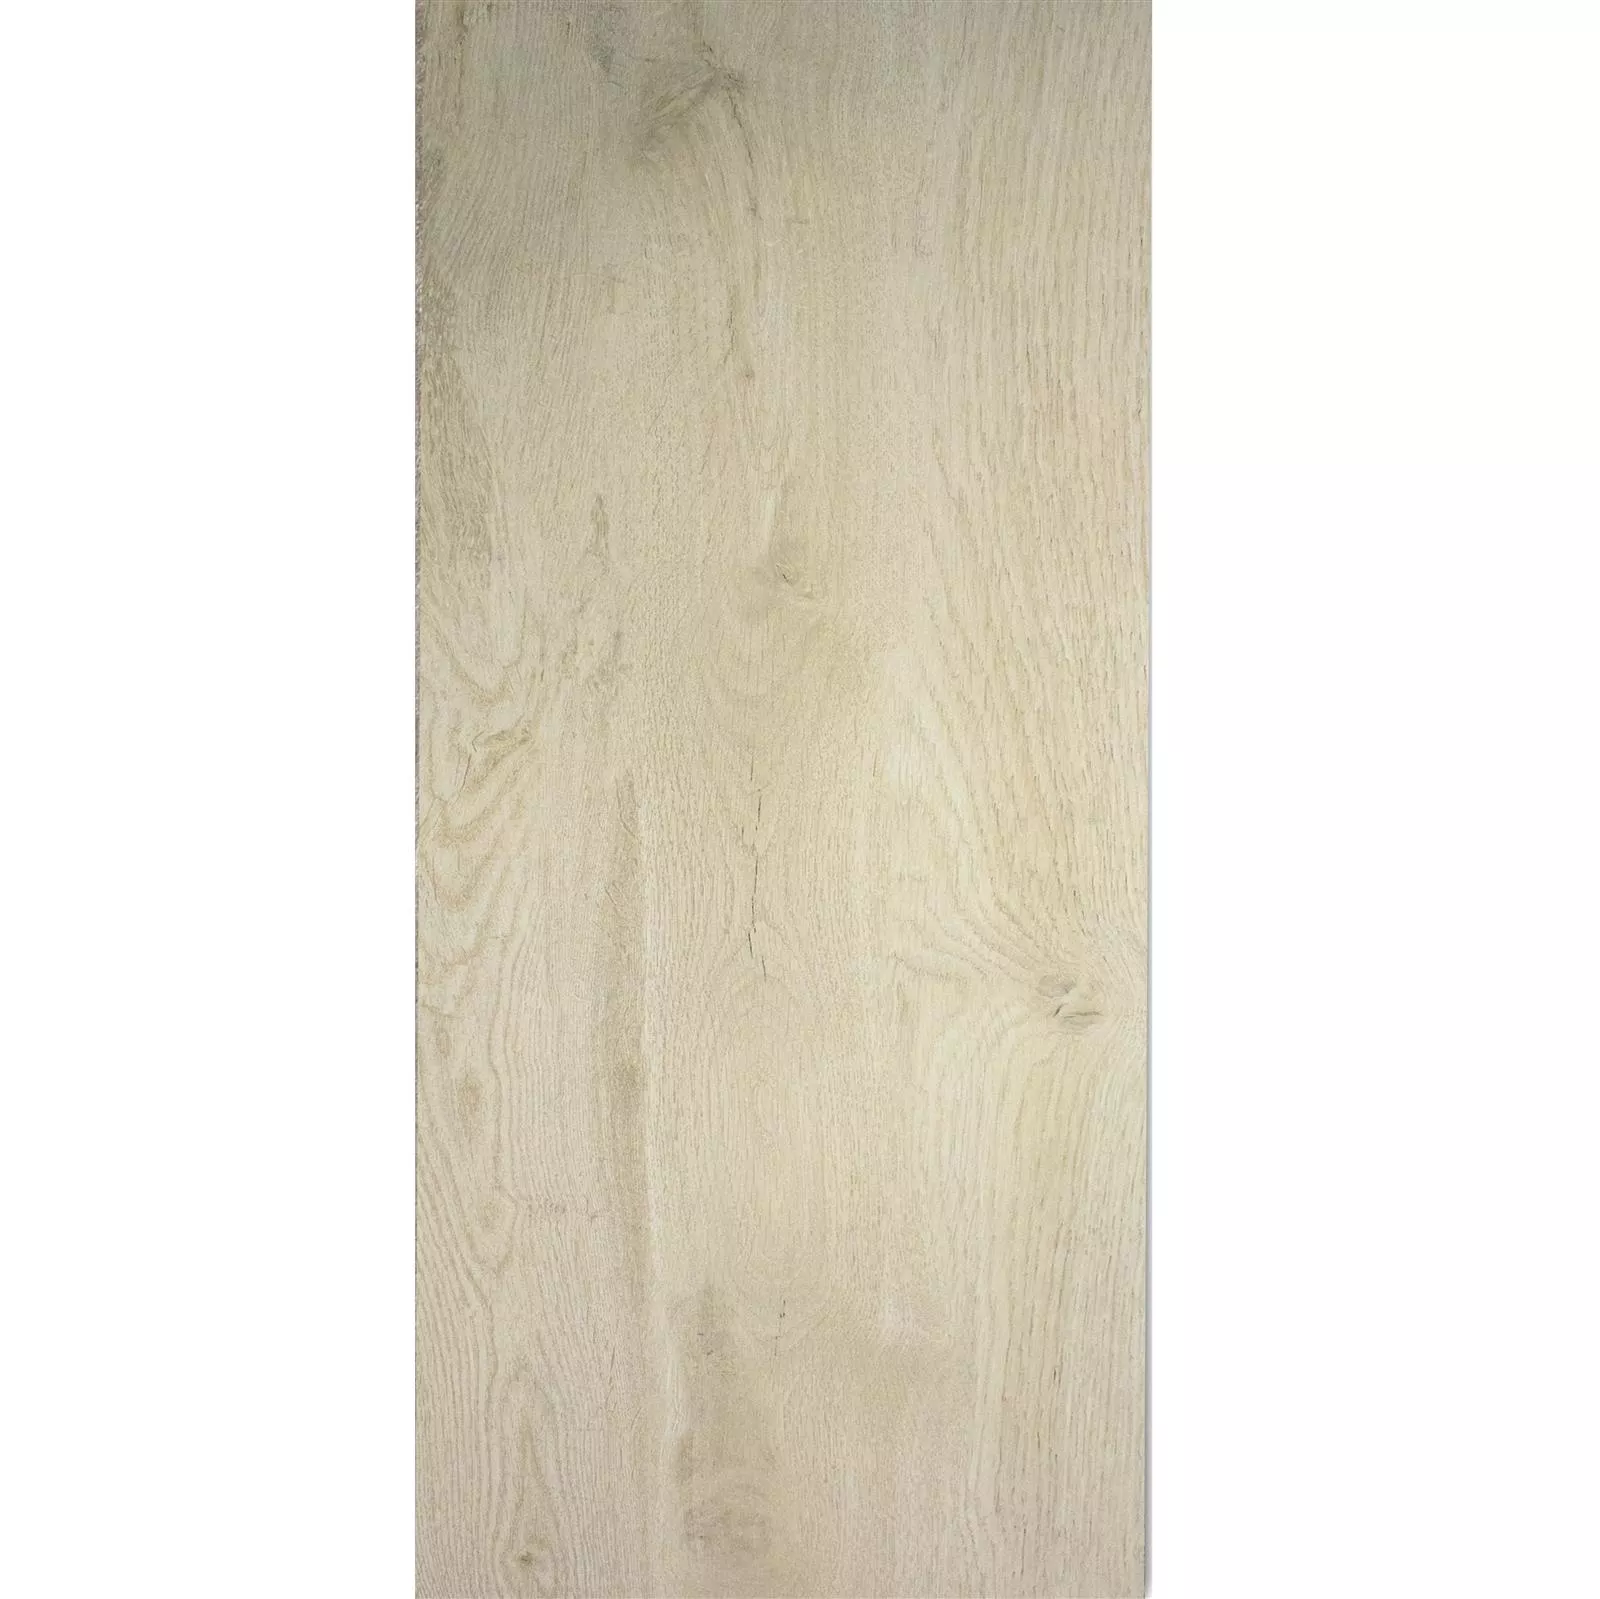 Próbka Płytki Podłogowe Wygląd Drewna Linsburg Beżowy 30x120cm